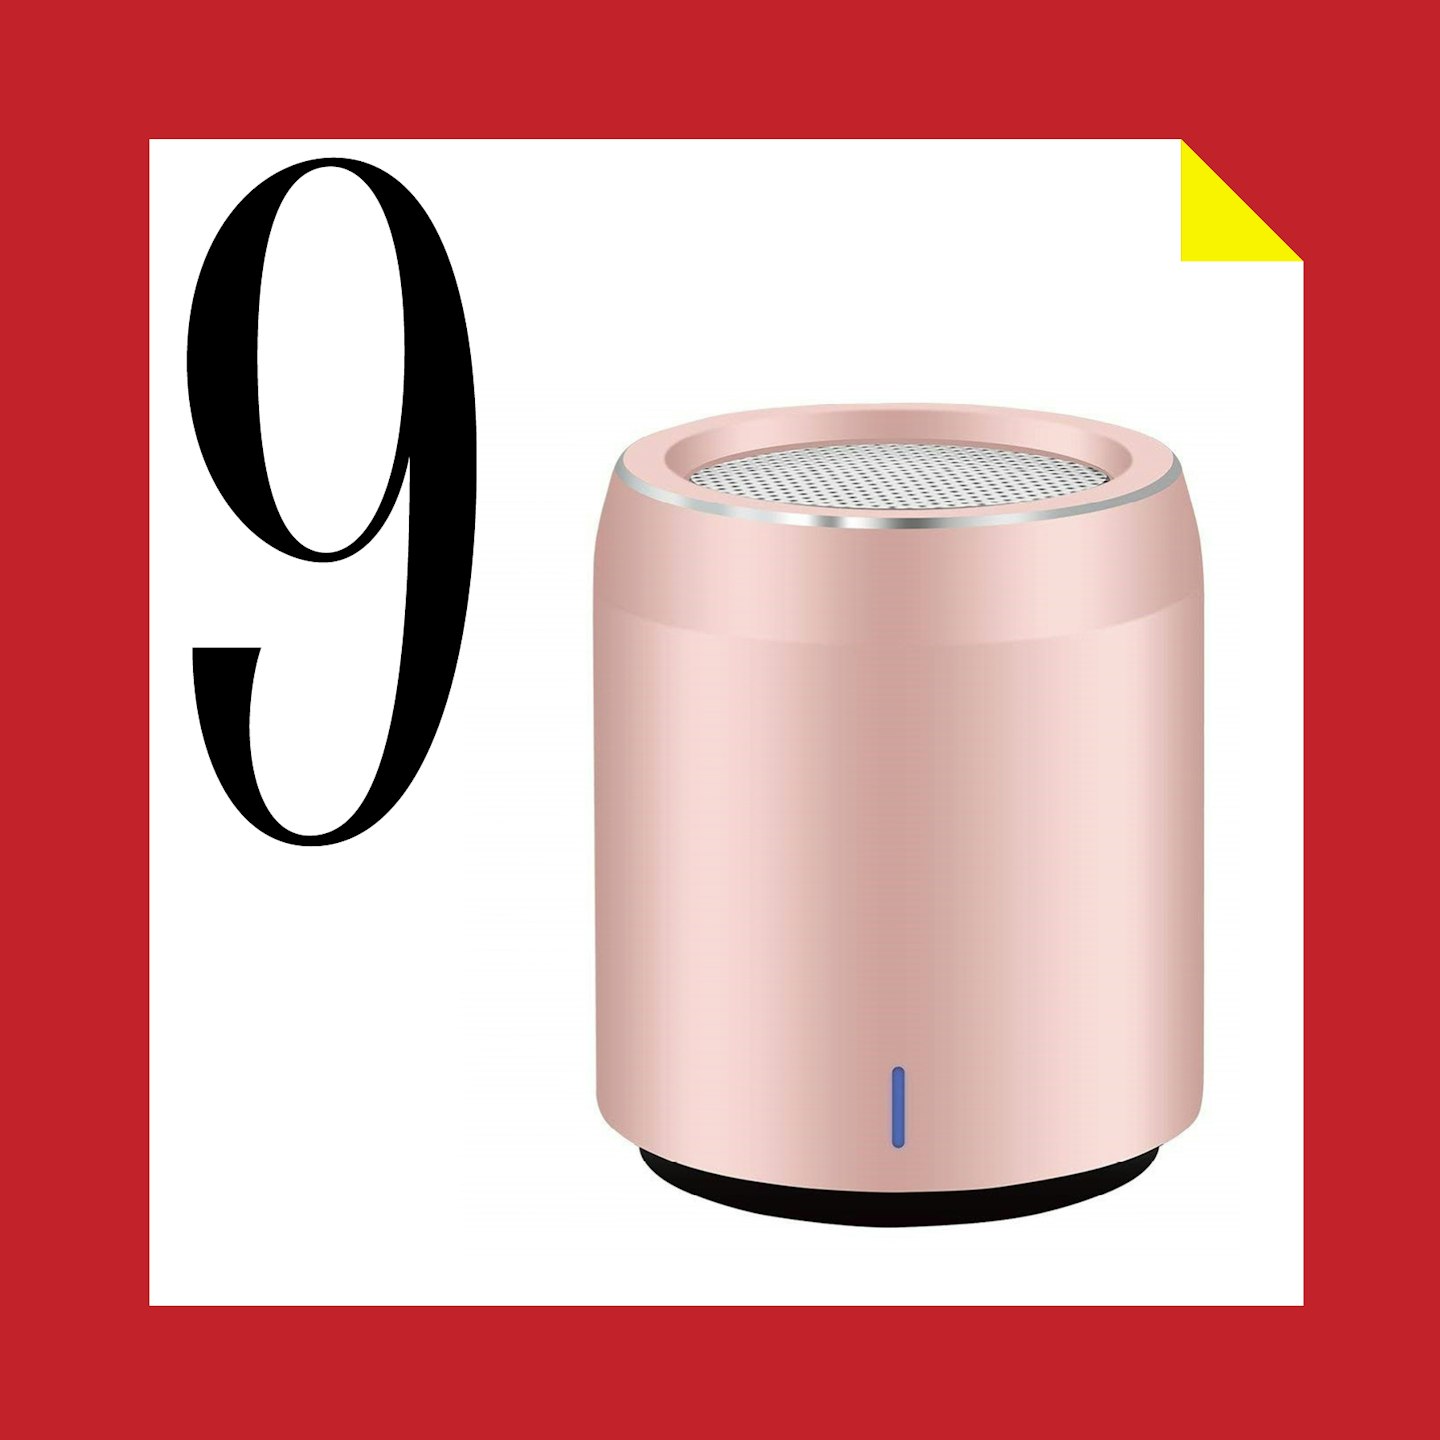 9 December - Usmain Mini Bluetooth Speaker Egg